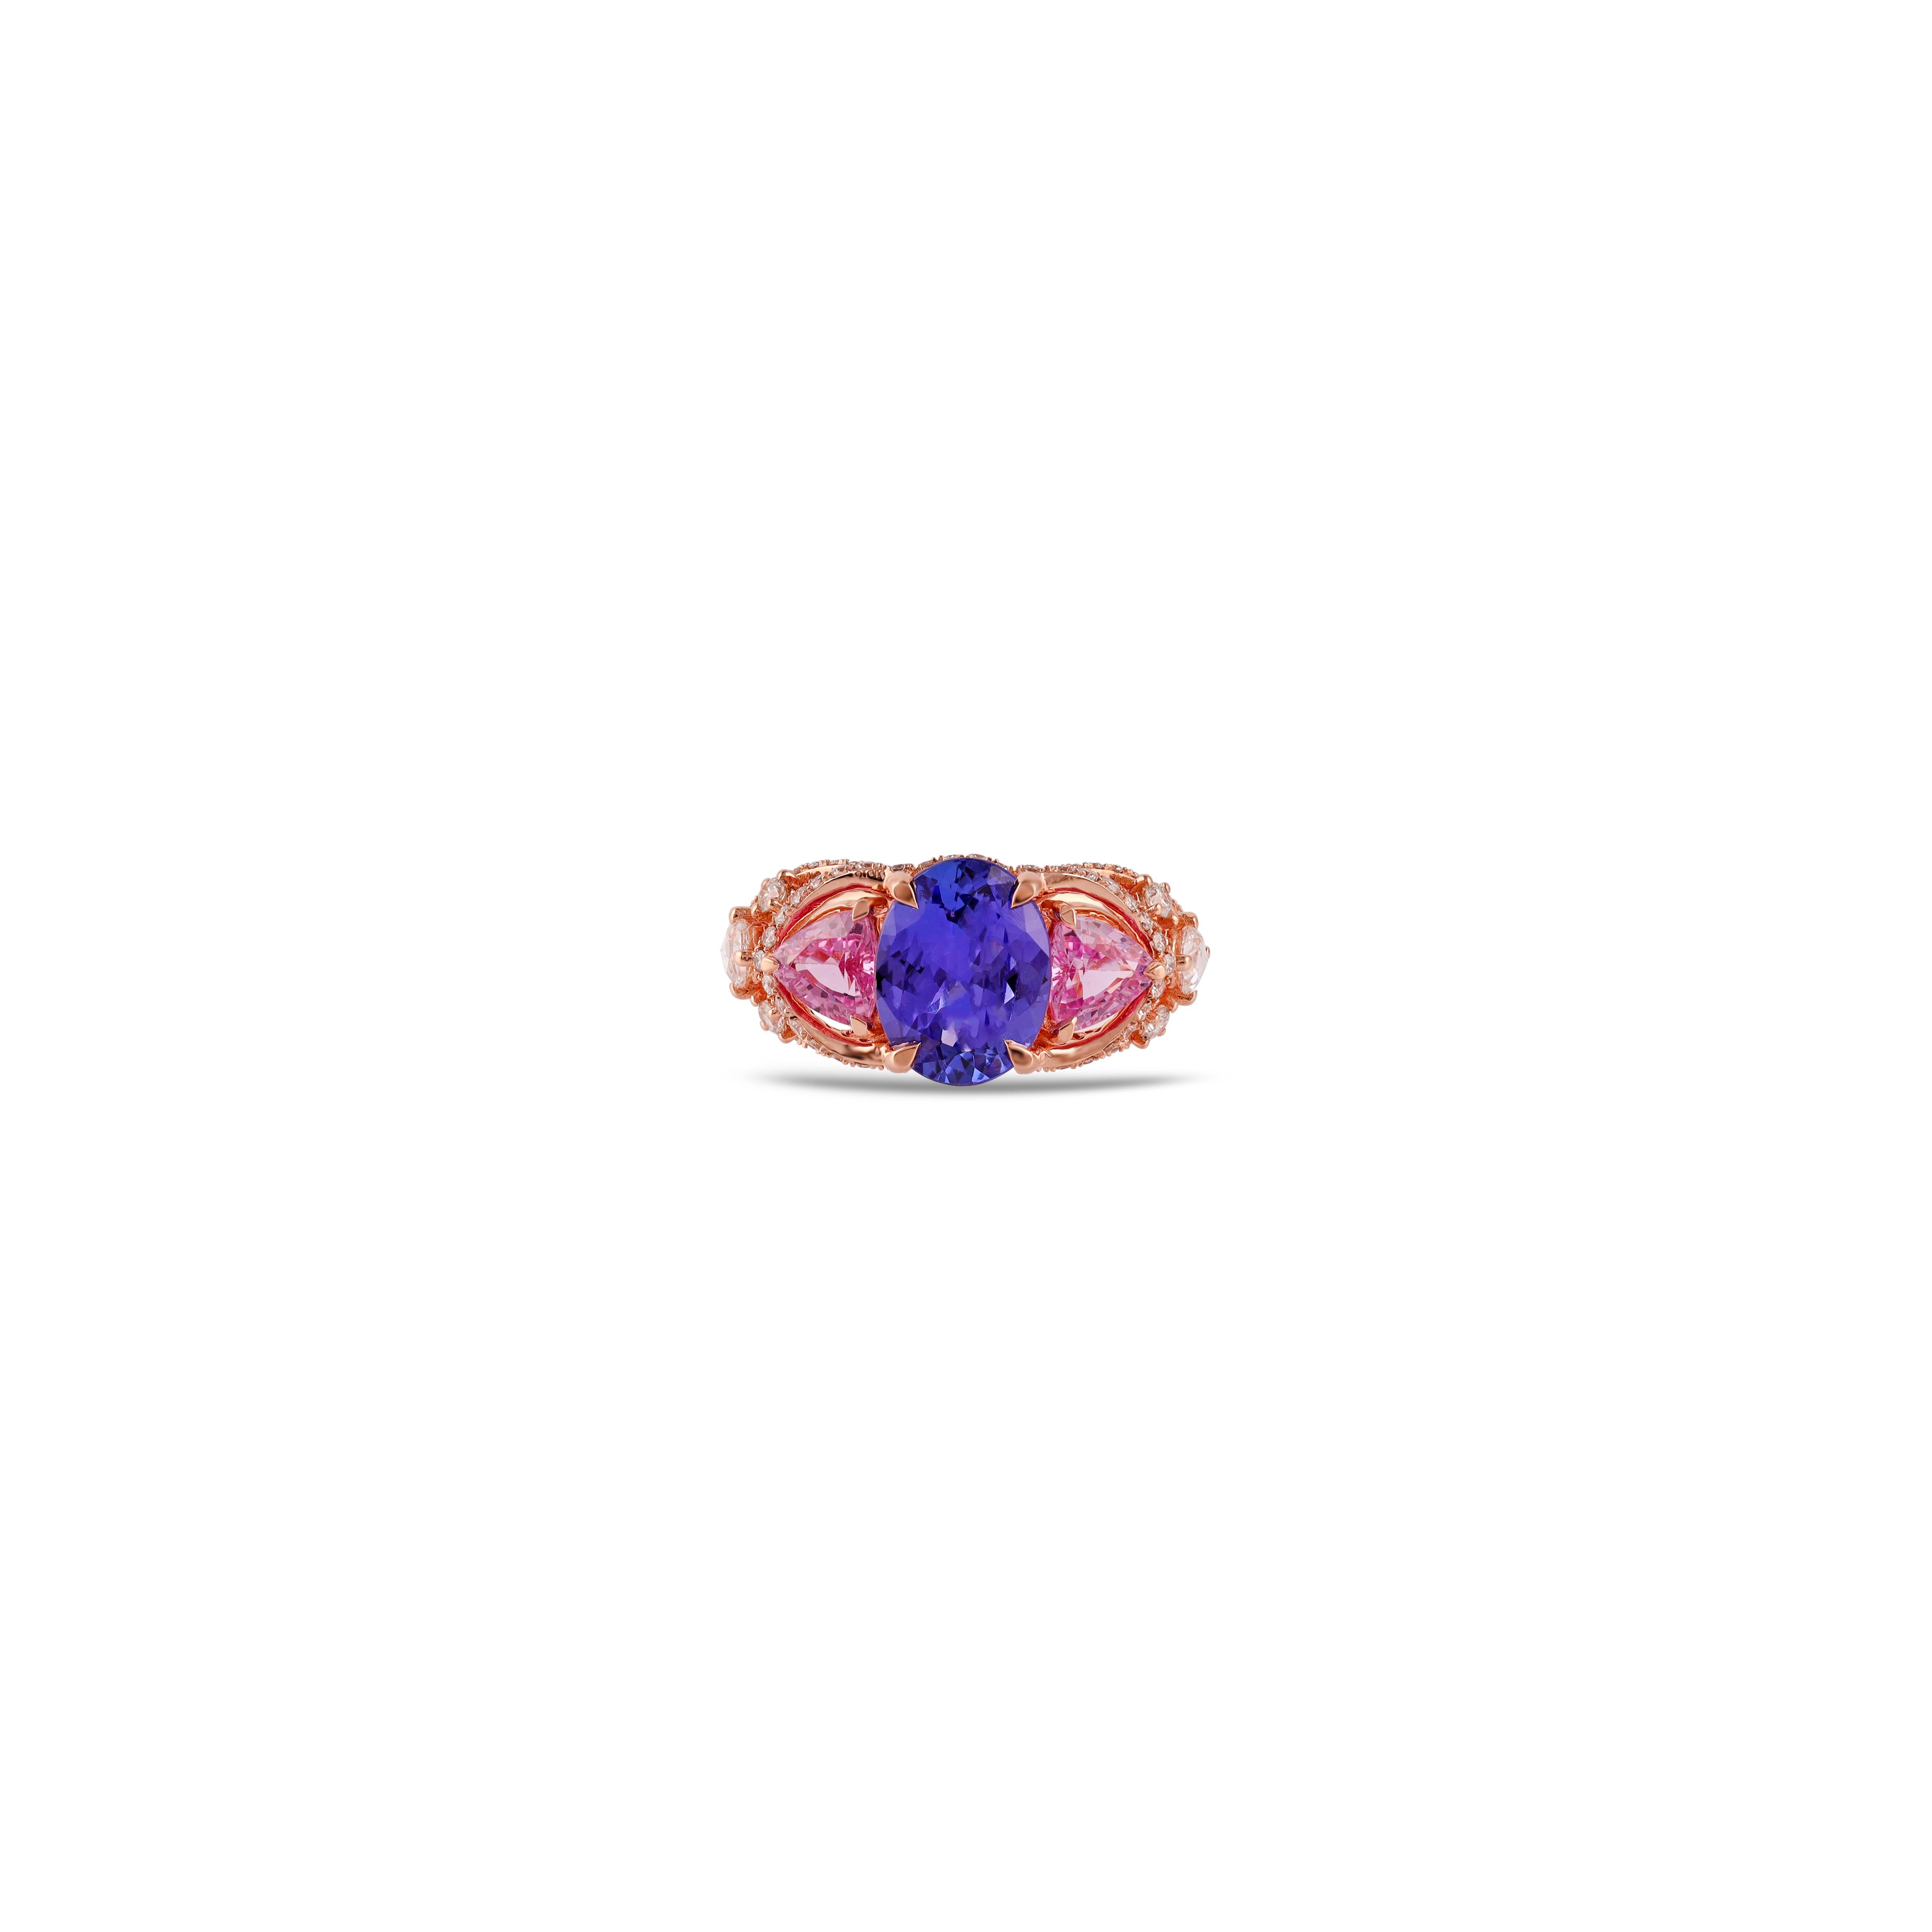 Tansanit = 2.31 Karat
Saphir = 1,21 Karat
Diamanten = 0,71 Karat

Ringgröße: 8* US

*Es kann kostenlos klein oder größer sein.
